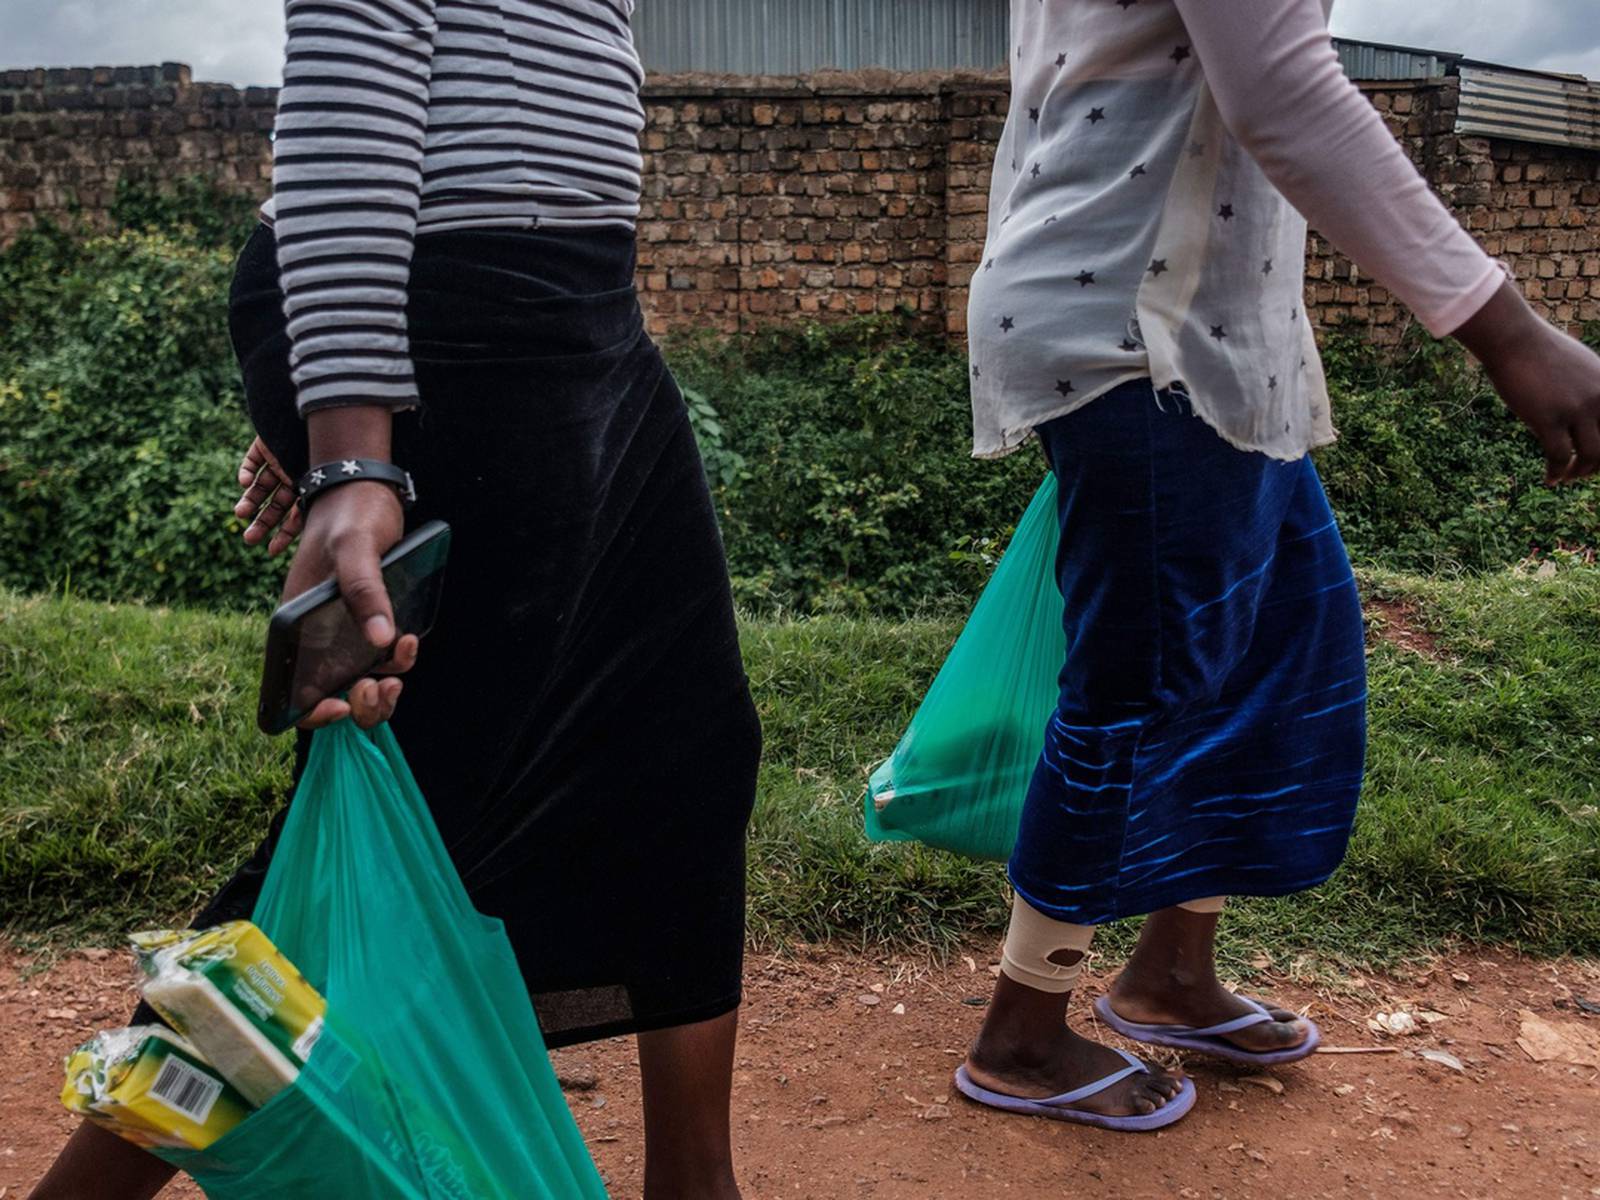 Escort girls in Nakasongola